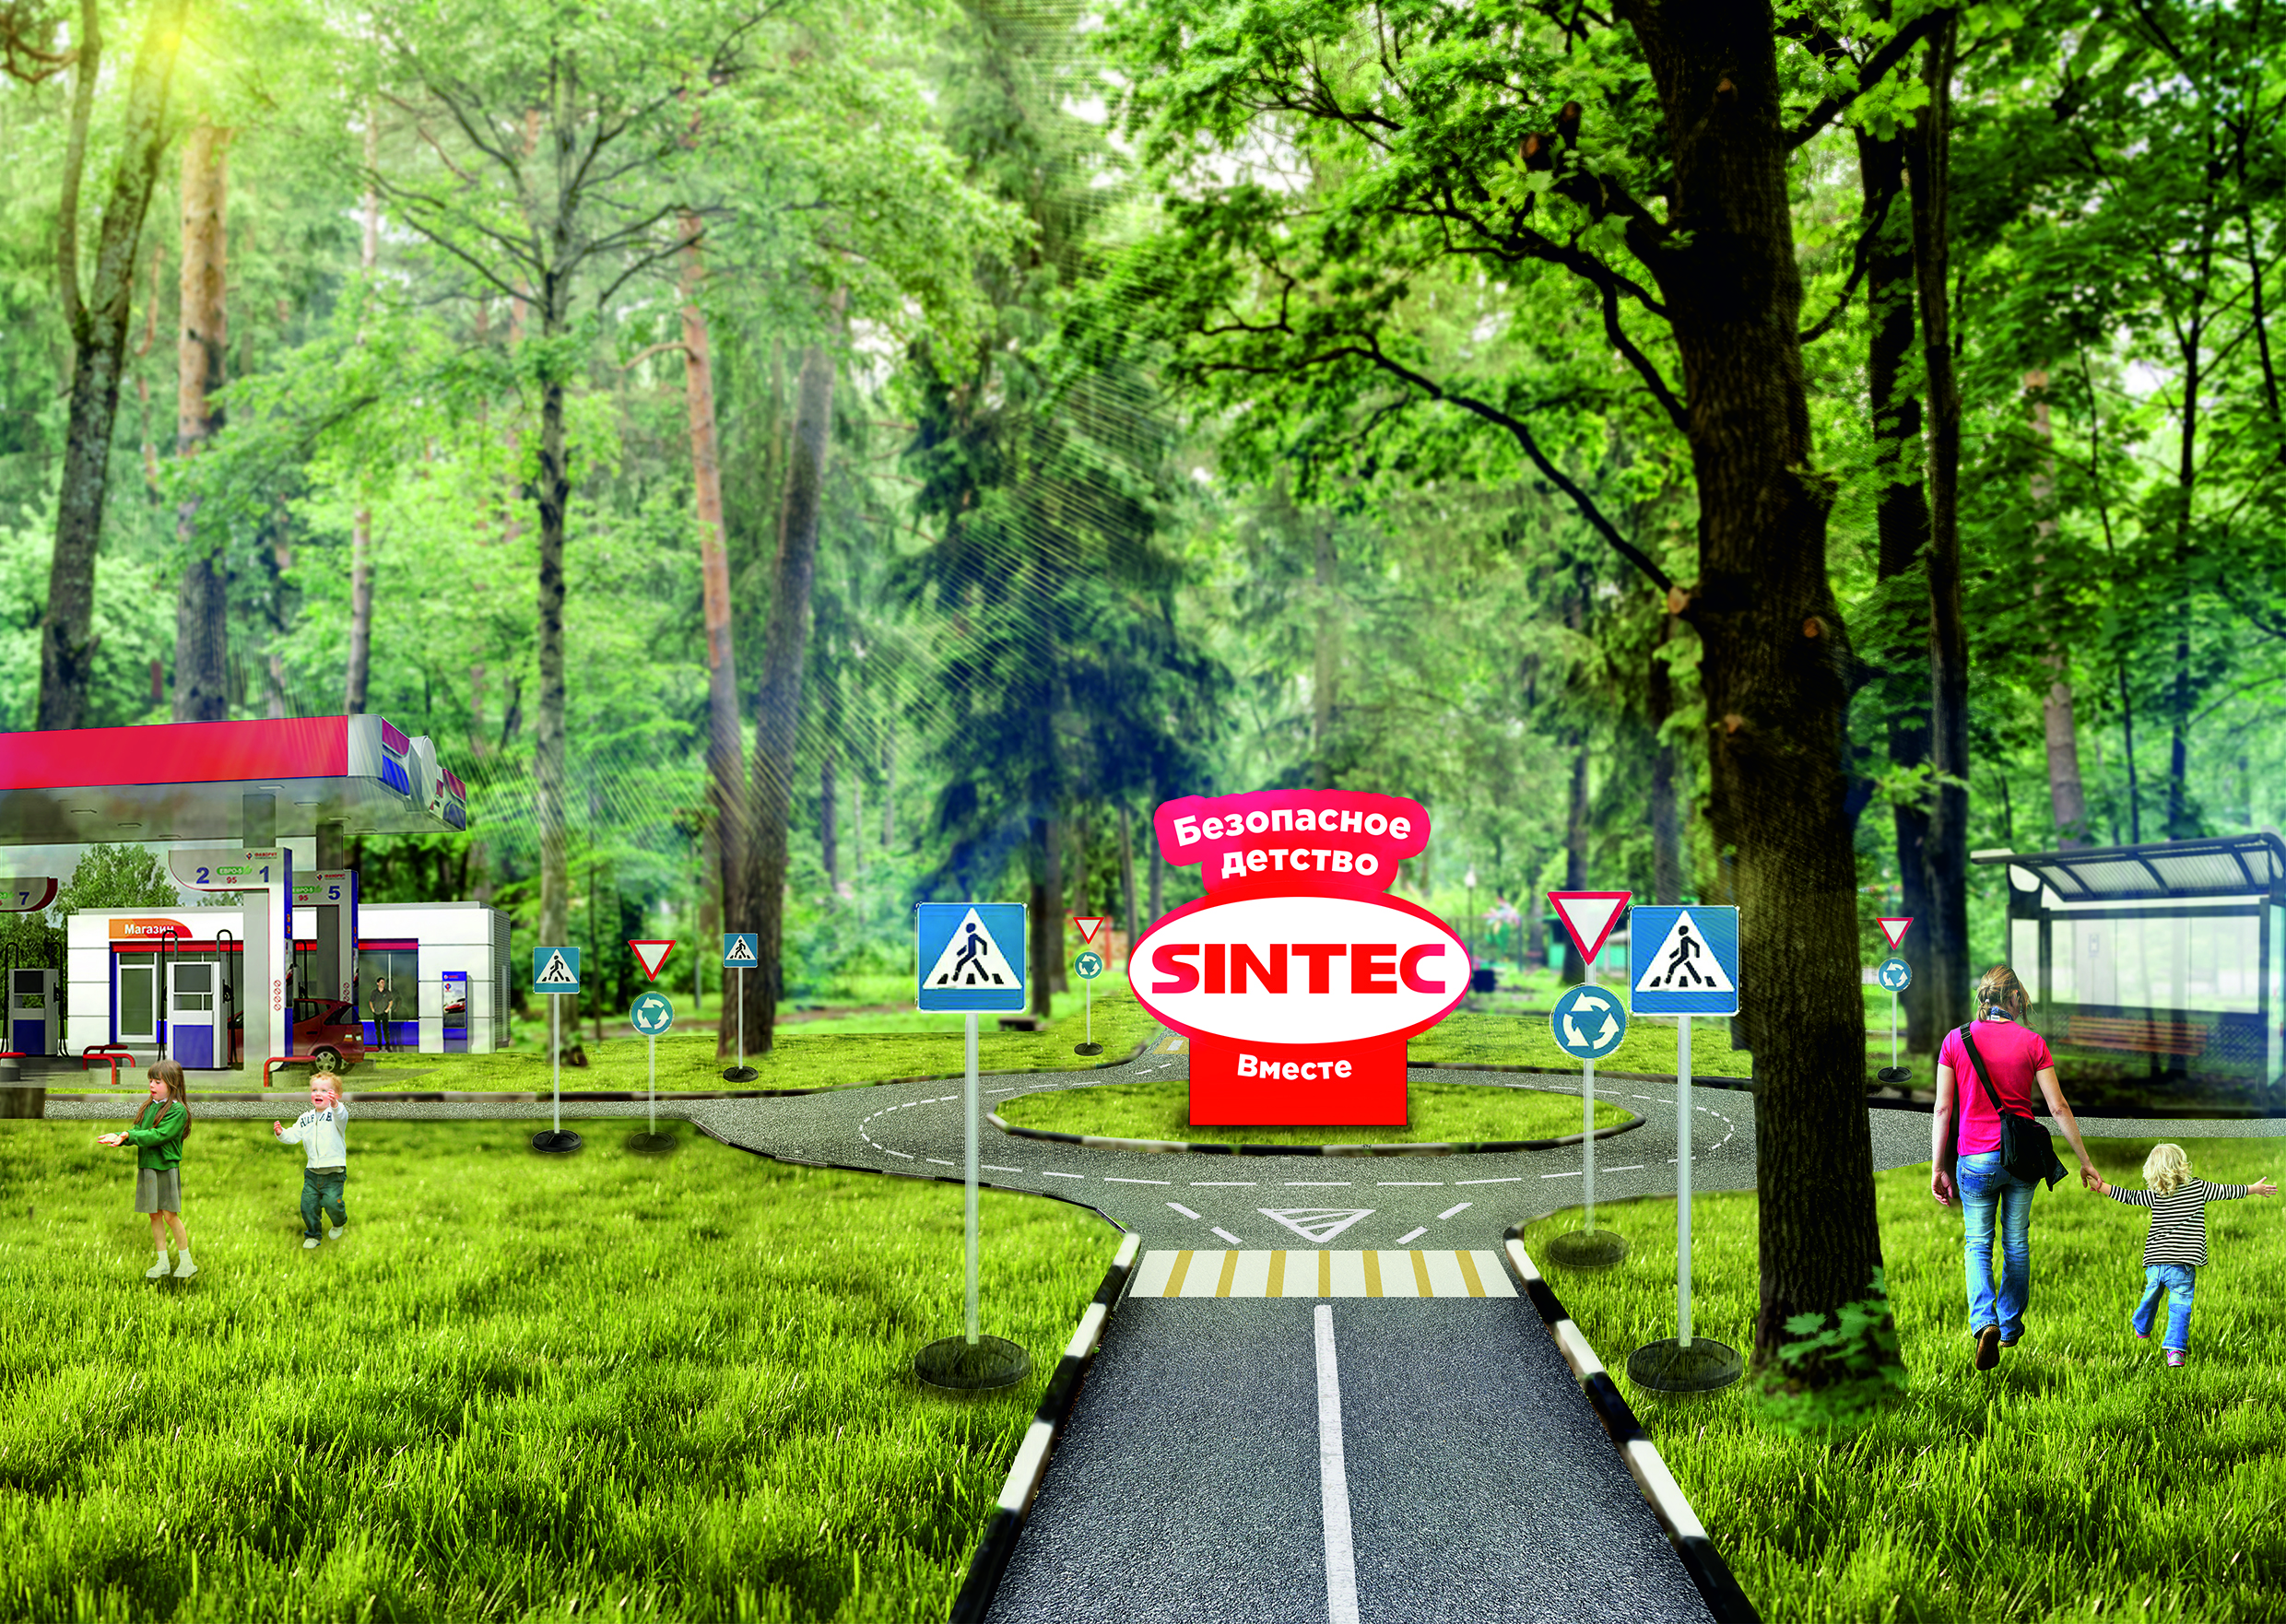 SINTEC Group начала строительство детского автогородка в парке Обнинска